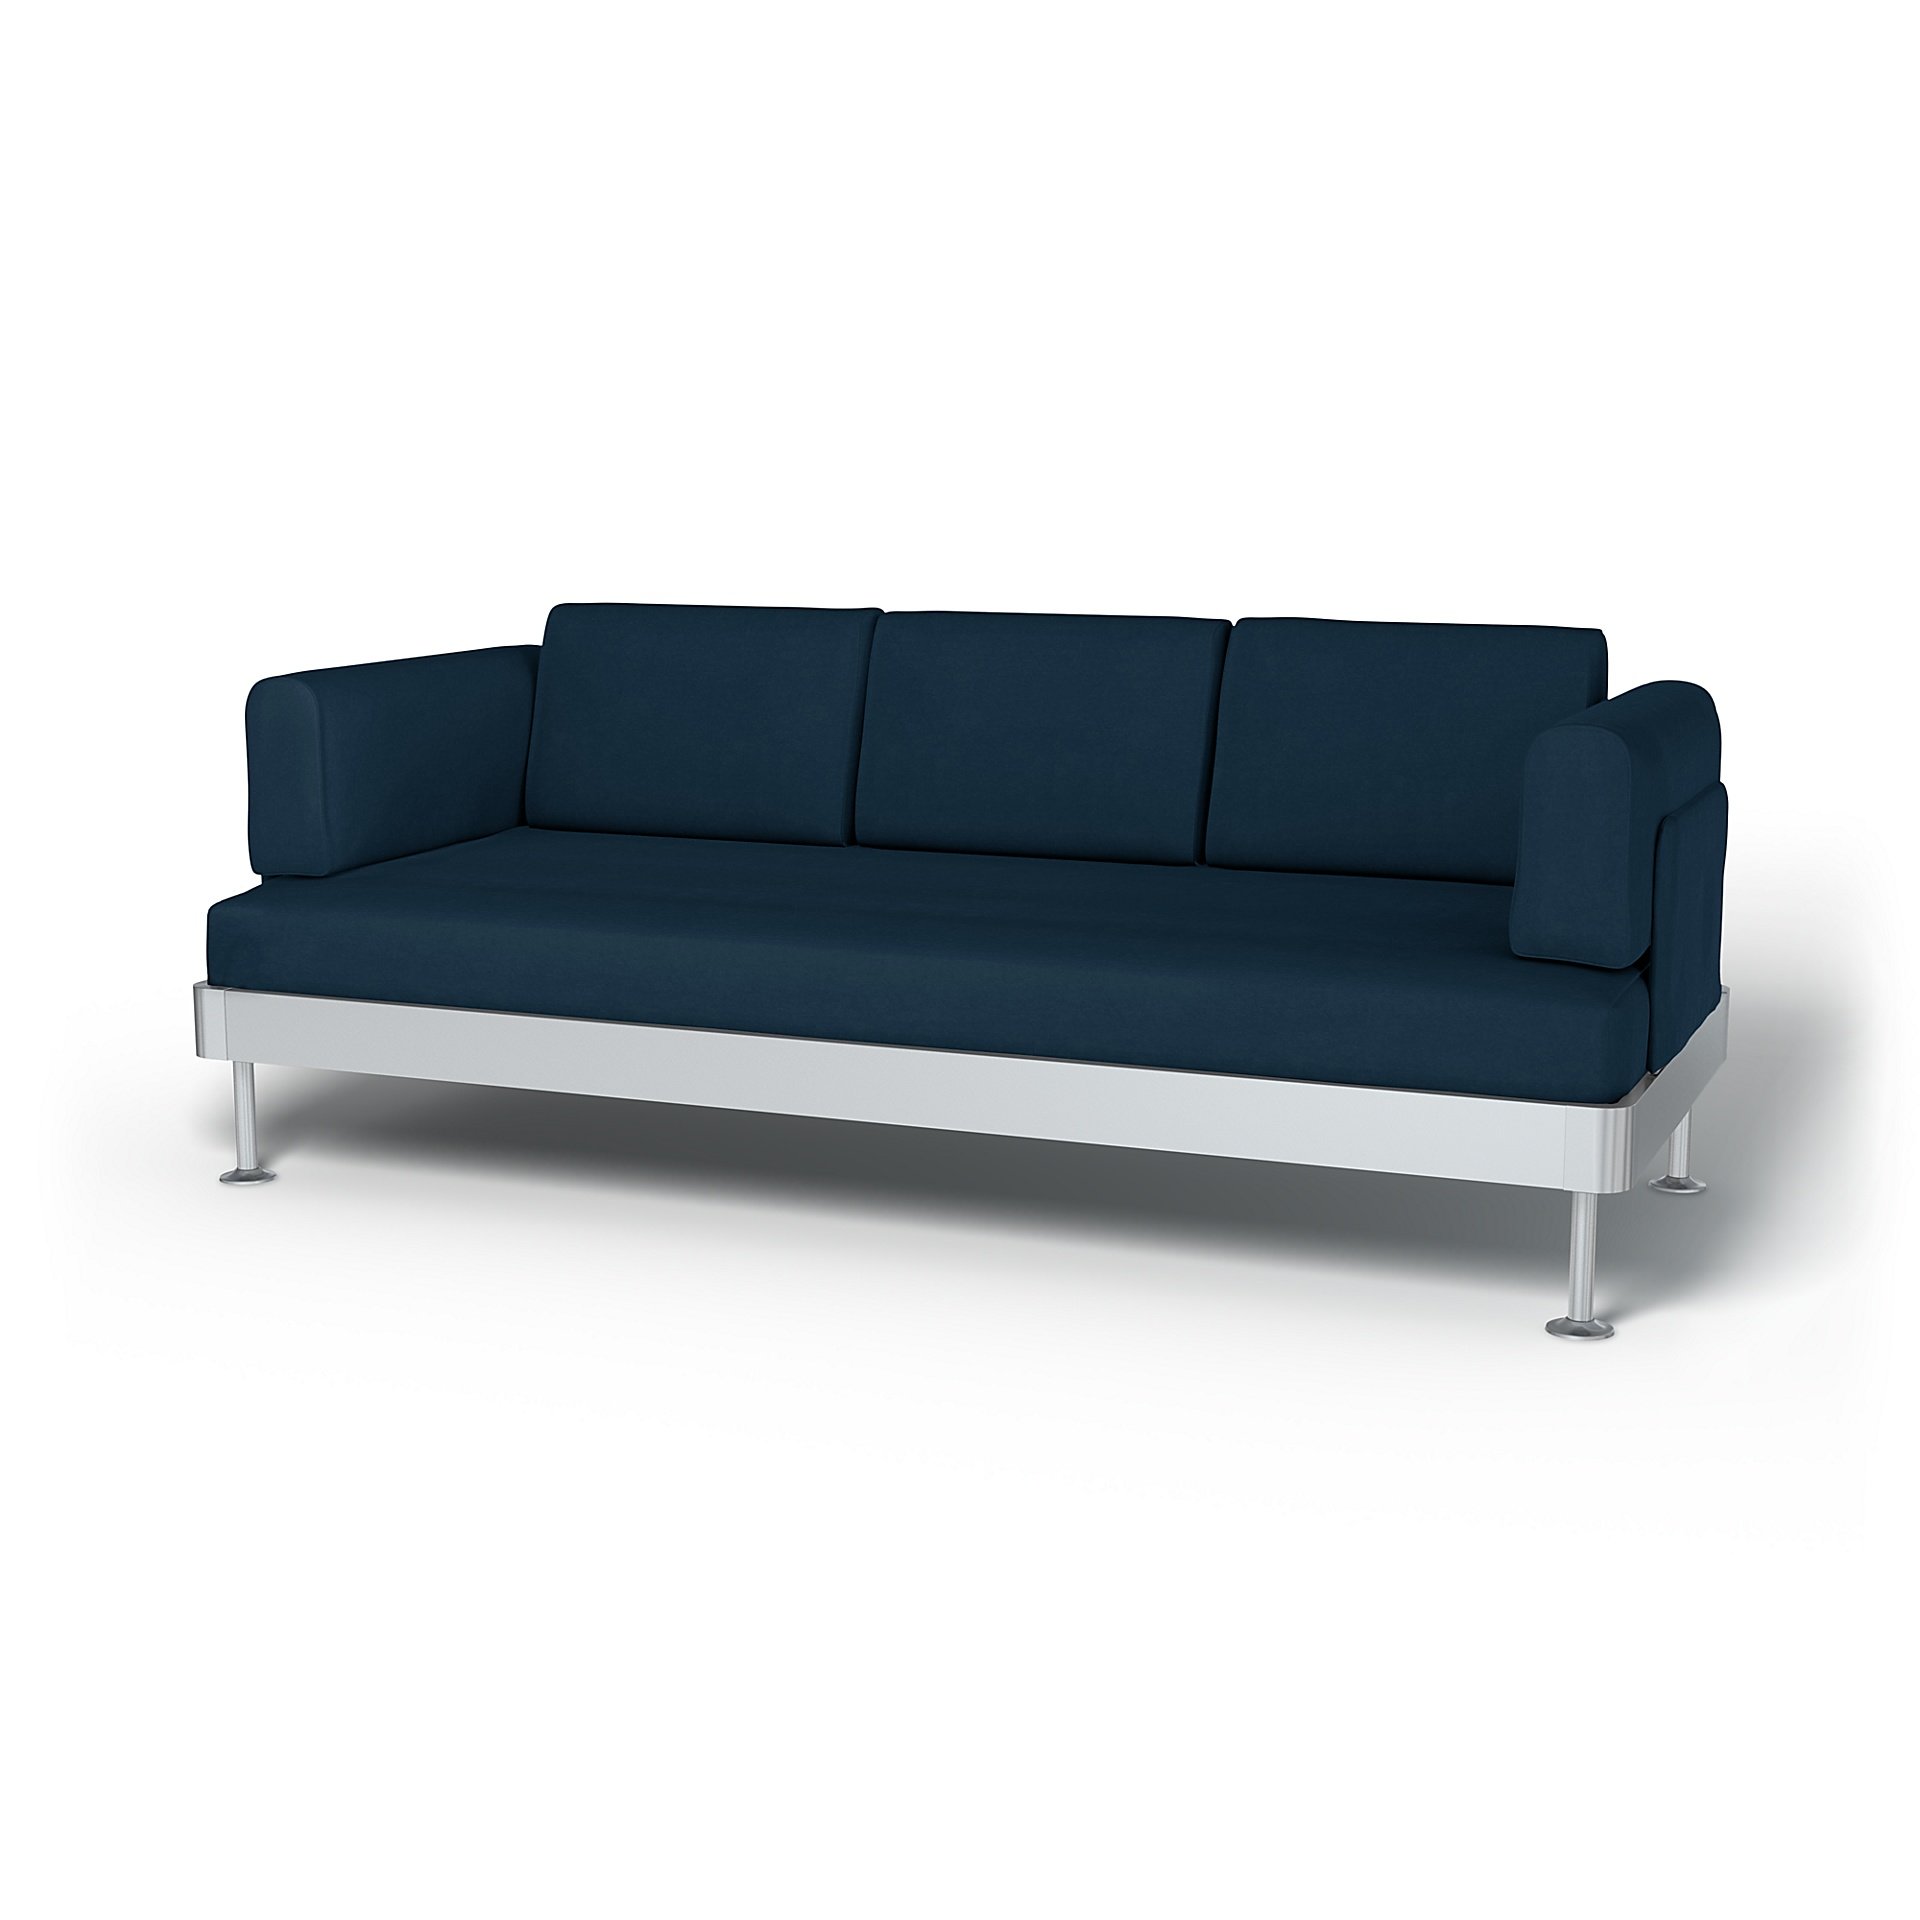 IKEA - Delaktig 3 Seater Sofa Cover, Midnight, Velvet - Bemz